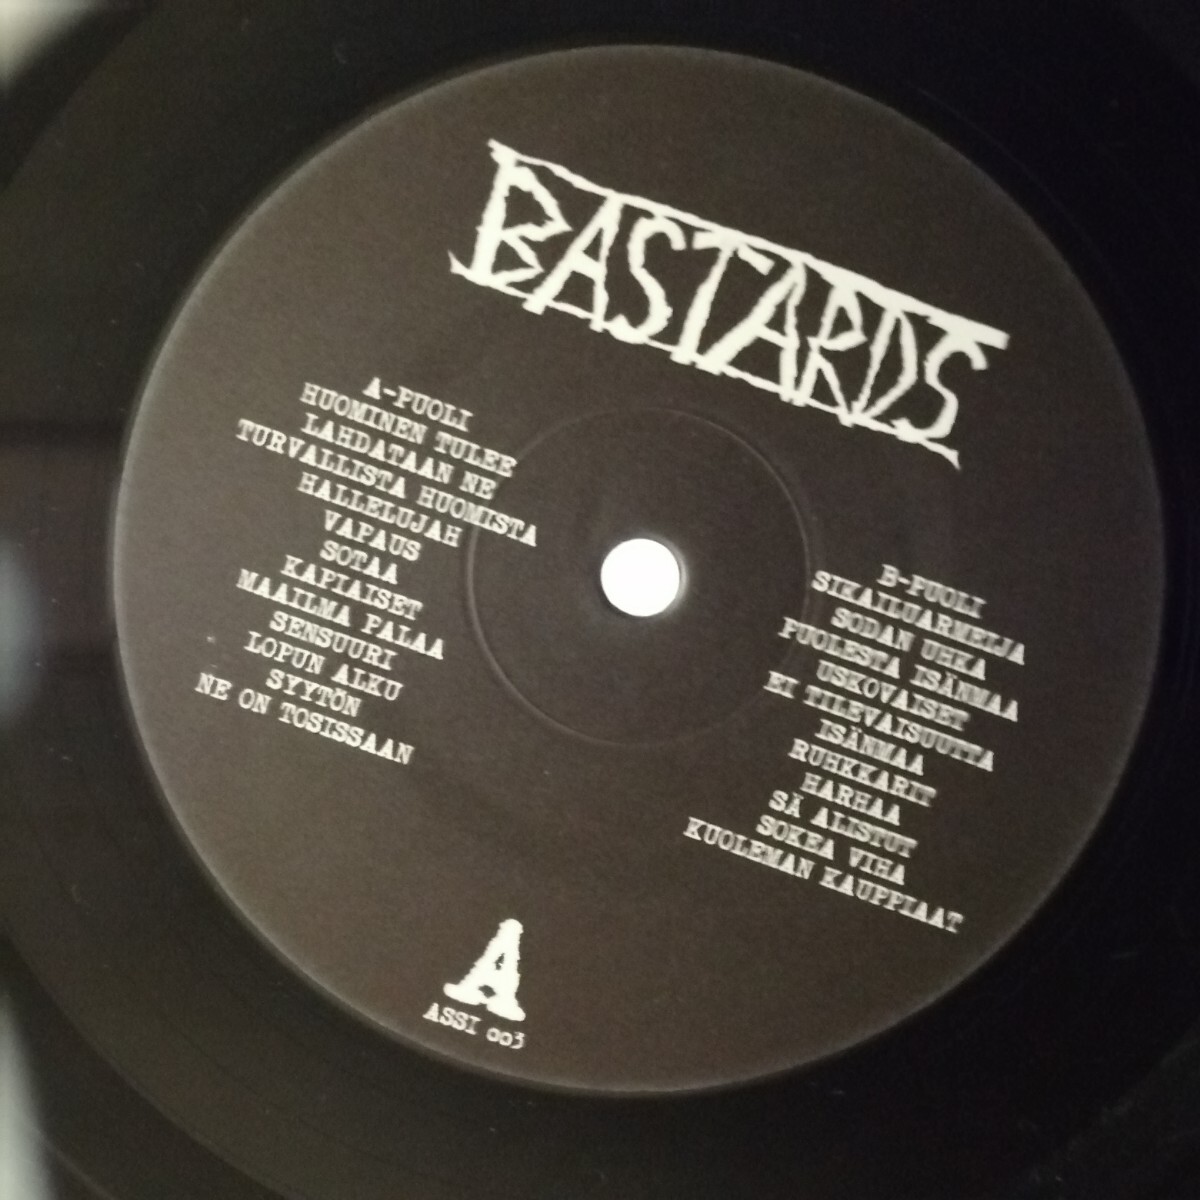 D04 中古LP 中古レコード　BASTARDS demo82 ドイツ盤　ASSI-003 フィンランド　ハードコア_画像6